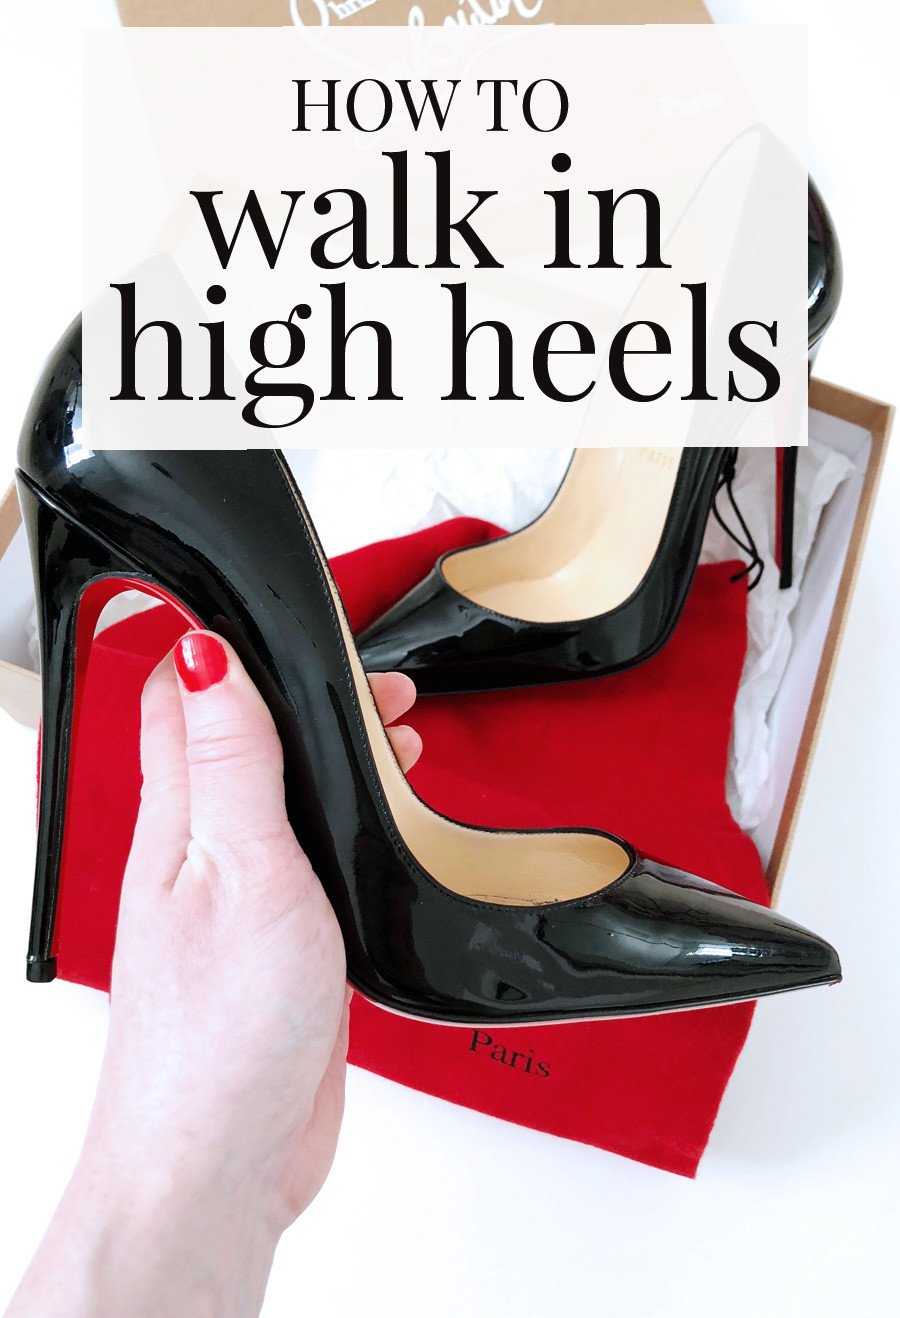 Kruiden Inschrijven Uittreksel How to Walk In High Heels Without Pain - Help Guide